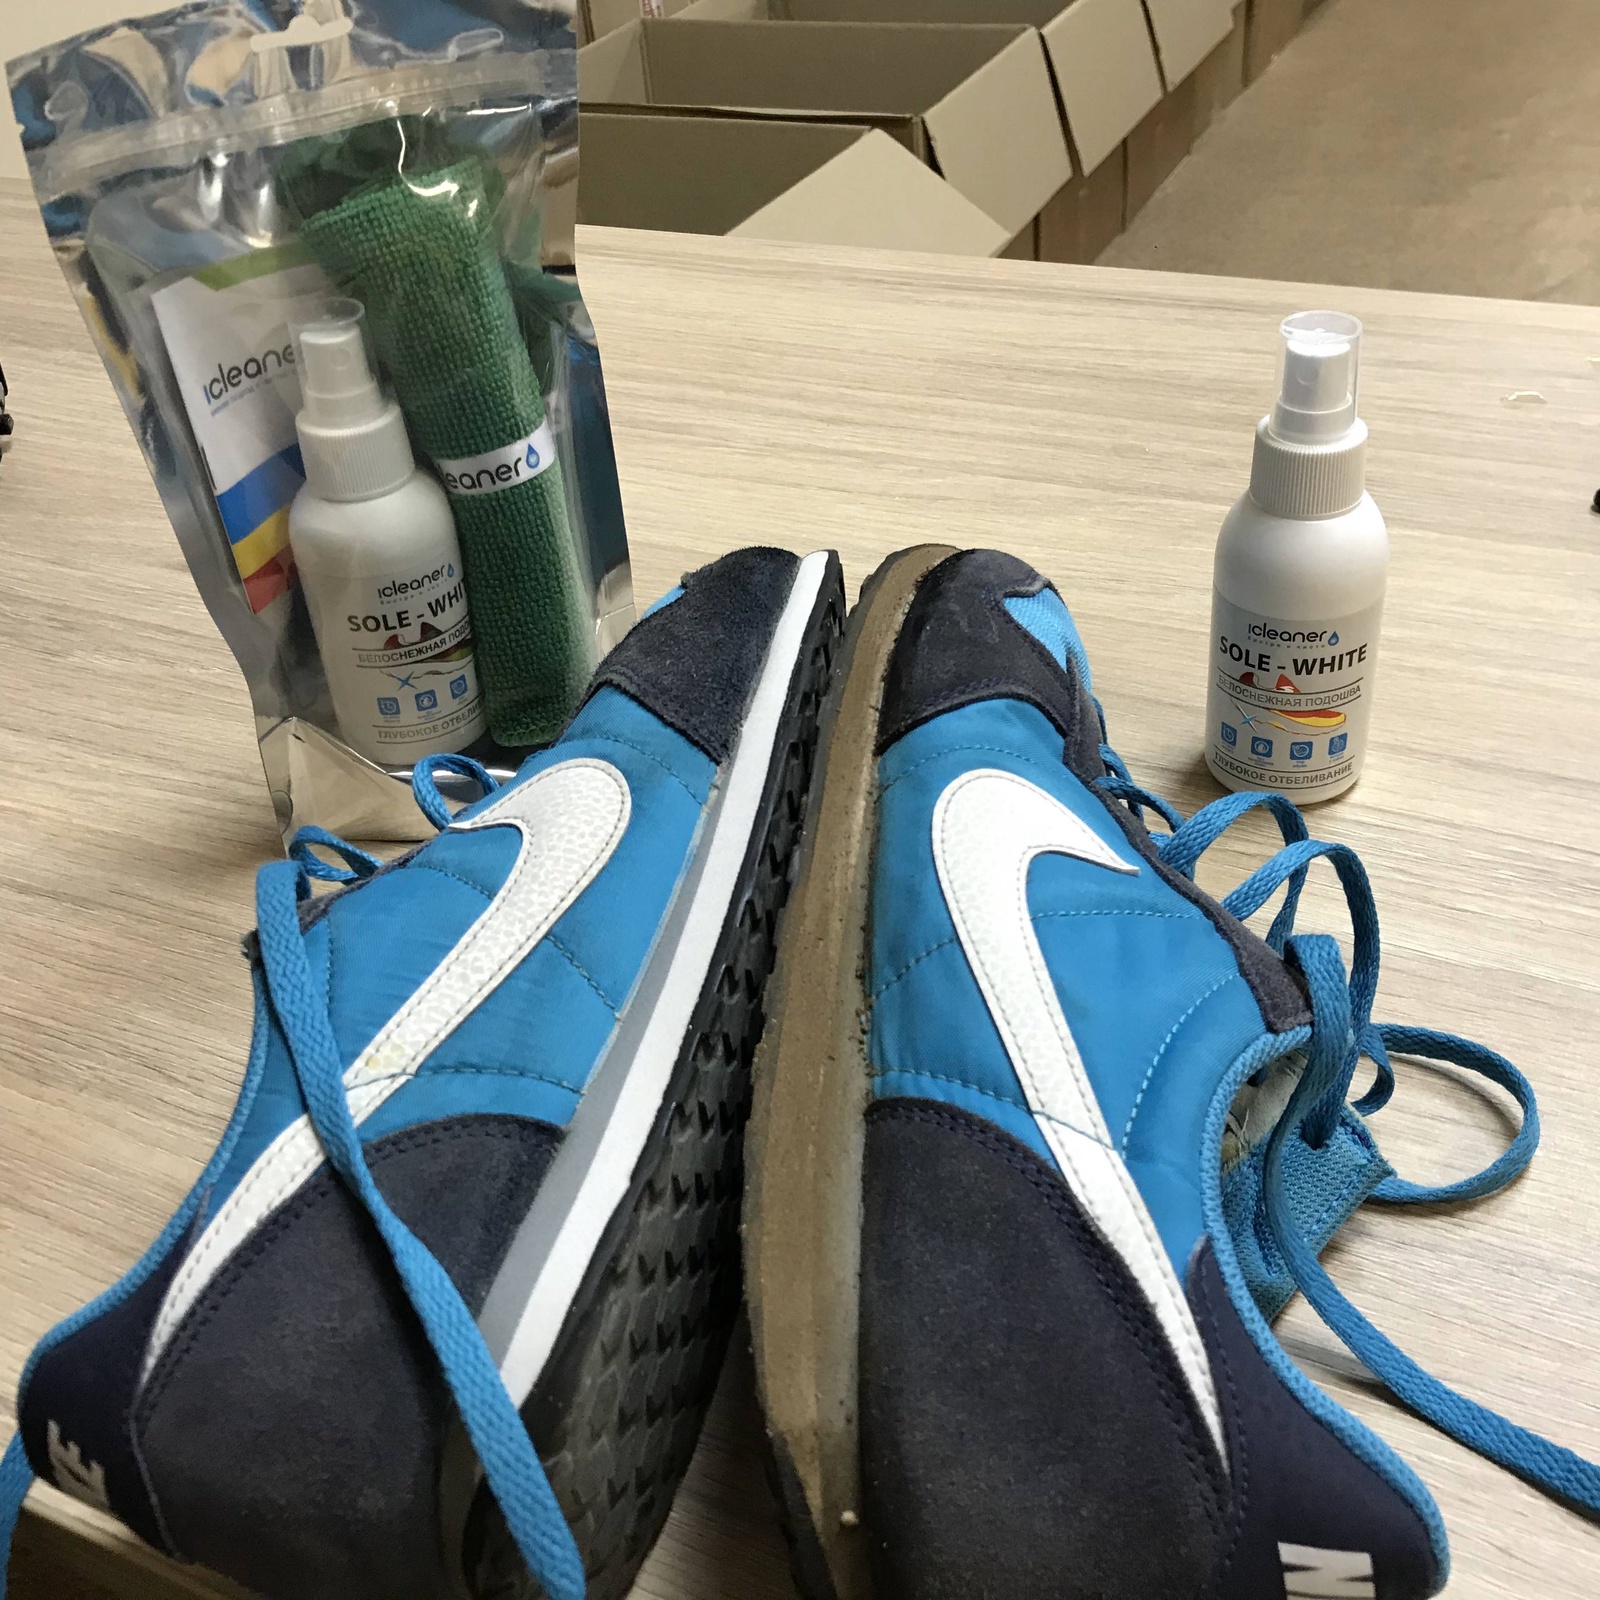 фото Спрей - очиститель для ухода за обувью iCleaner "Sole-White" для чистоты белой подошвы с микрофиброй